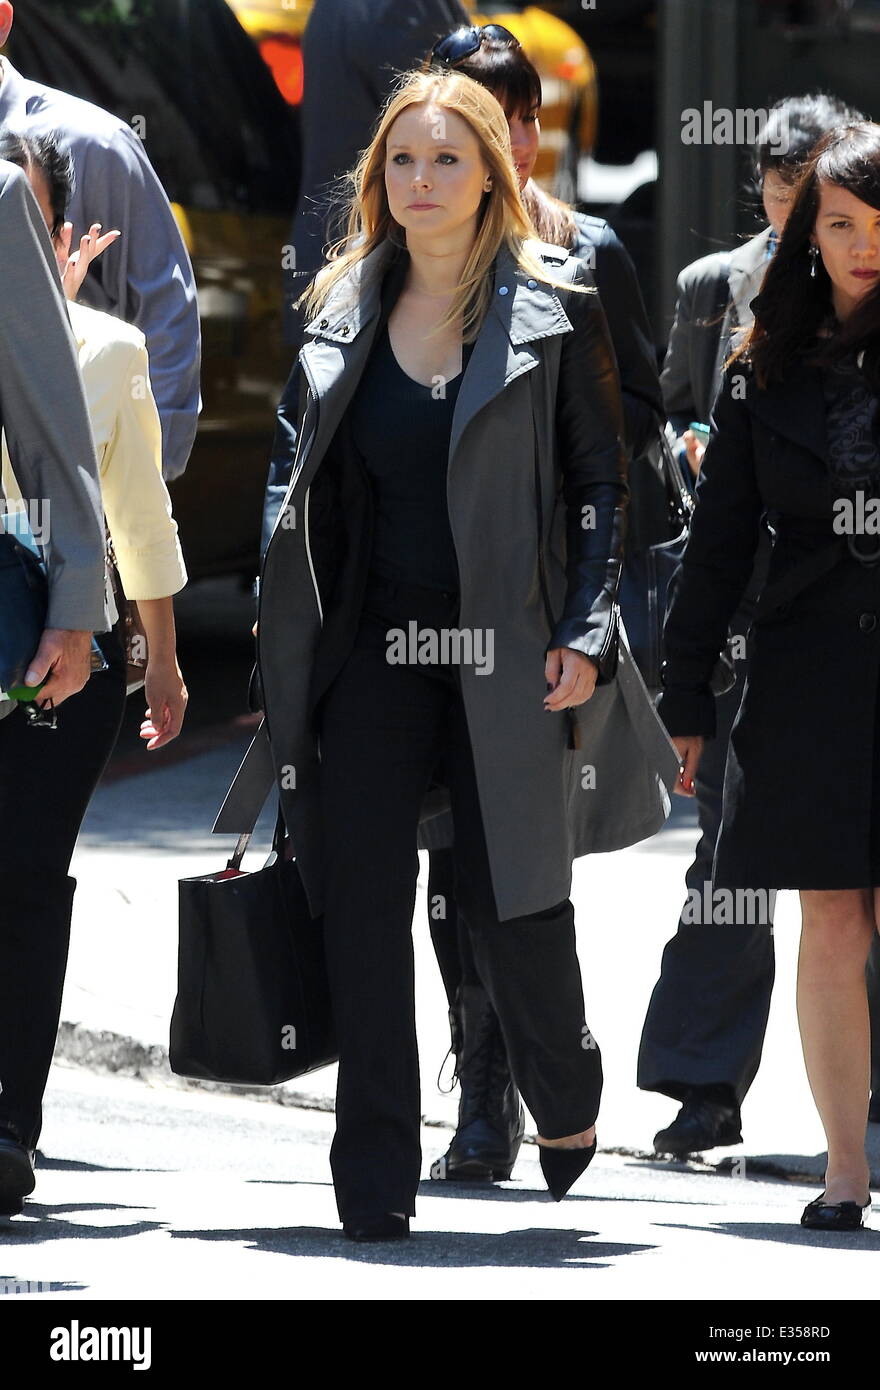 Kristen Bell Filme spät in die Nachtszenen für "Veronica Mars" mit Co-Star Chris Lowell Featuring: Kristen Bell wo: Los Angeles, CA, Vereinigte Staaten von Amerika bei: 27. Juni 2013 Stockfoto